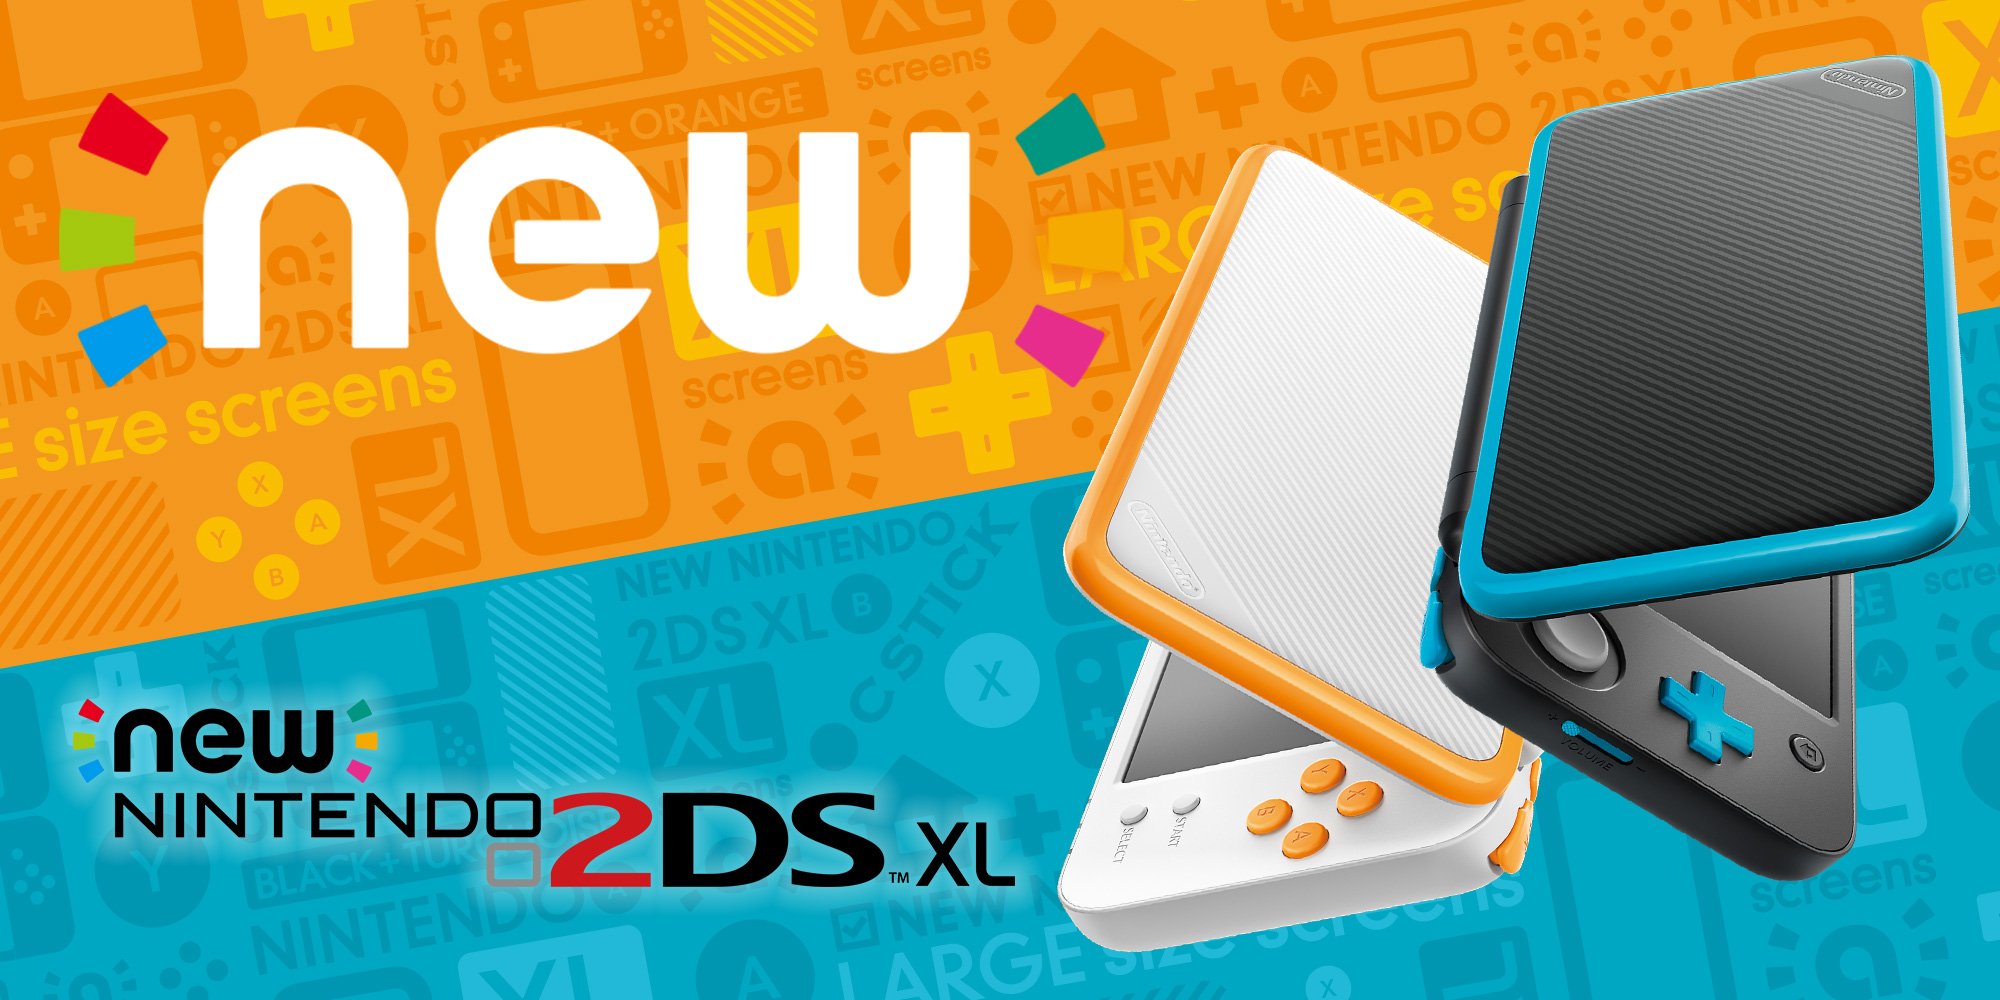 Nintendo brengt op 28 juli de New Nintendo 2DS XL uit